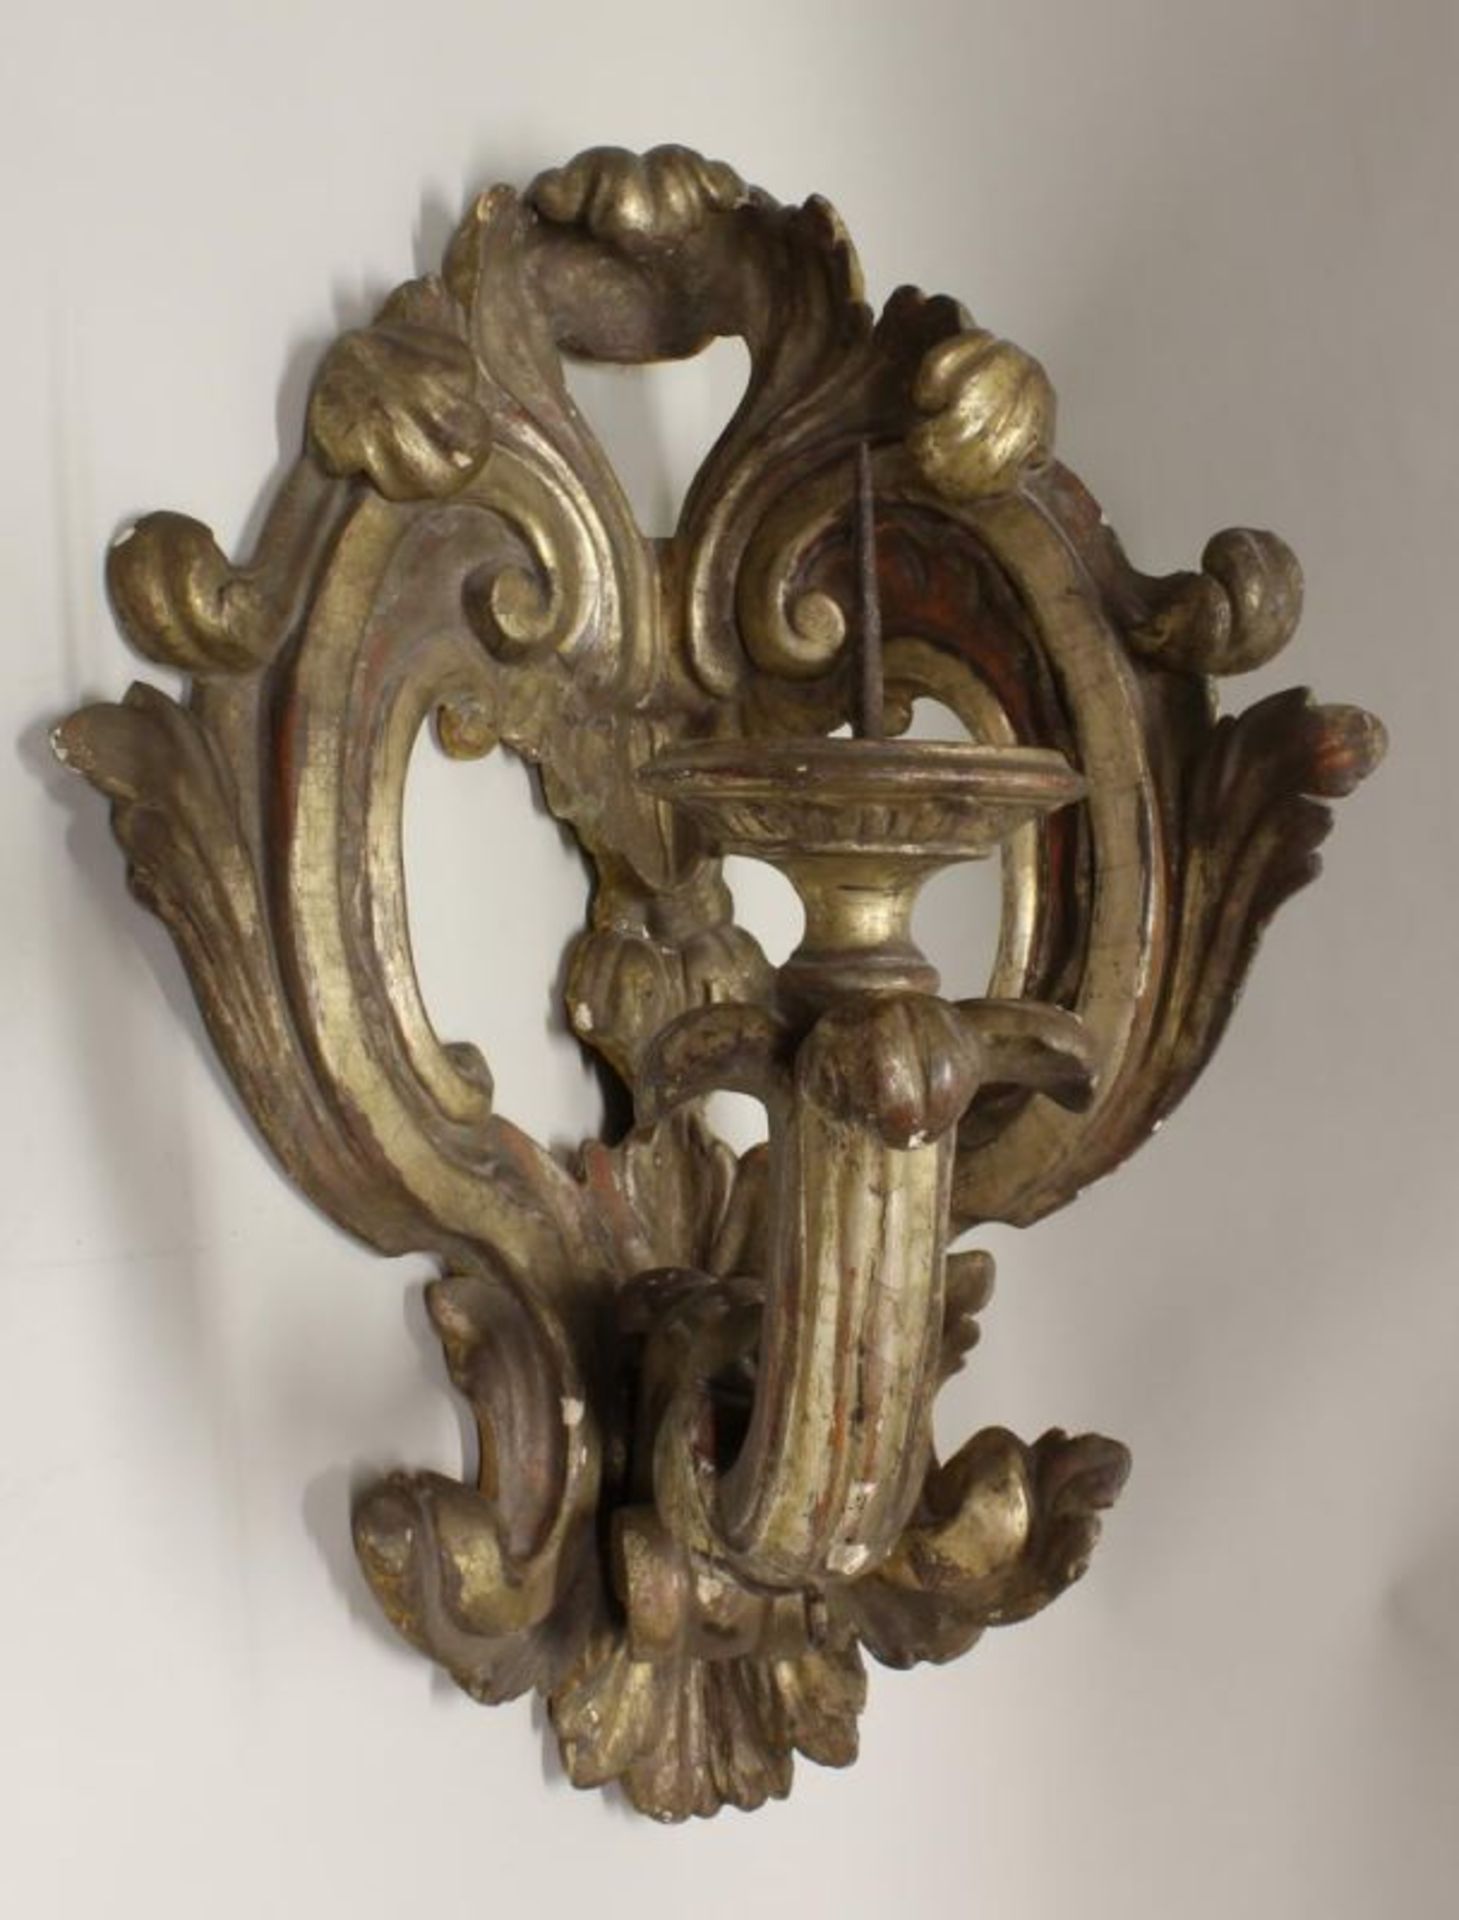 Eckwandleuchter, 19. Jh., Holz, goldbronziert, Barockform, Kerzenarm mit Dorn, 78 cm hoch,